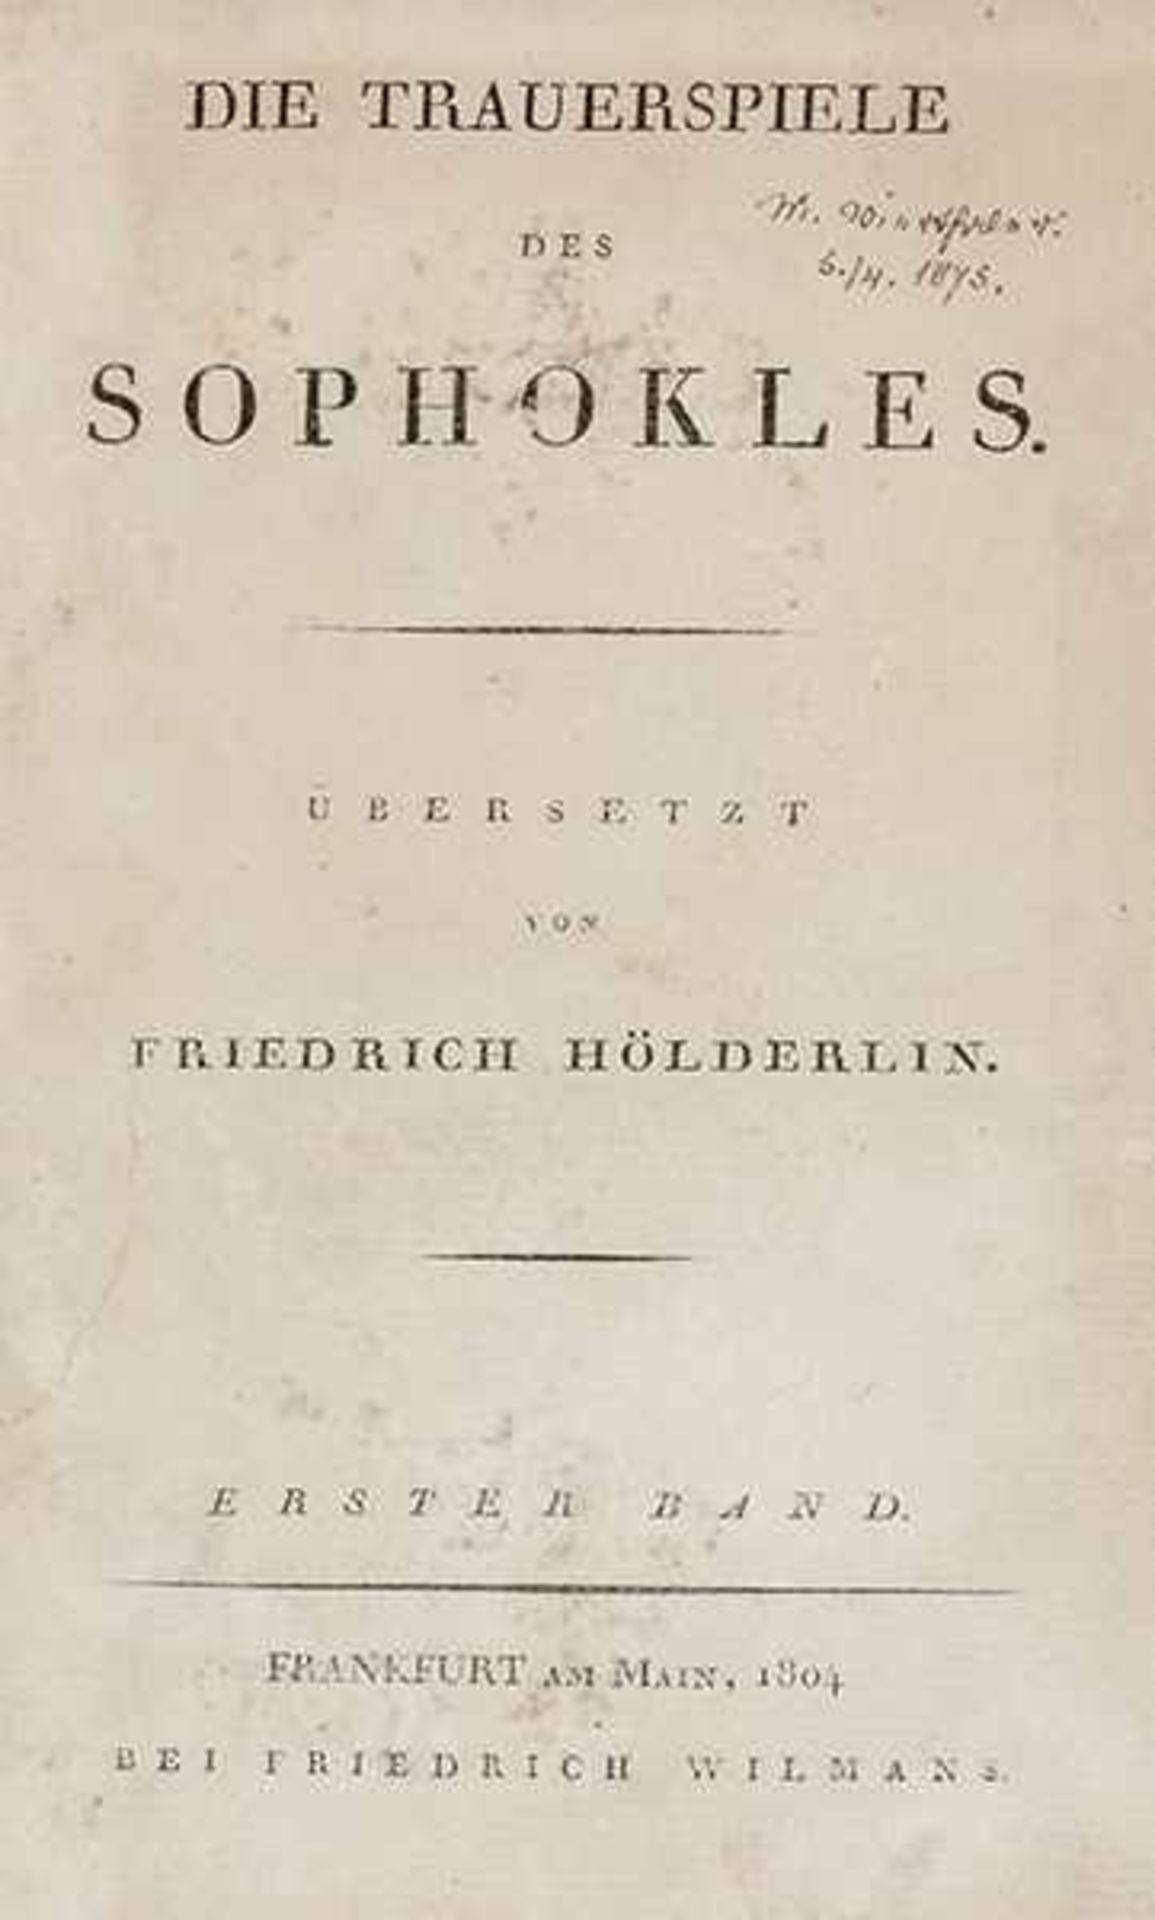 Hölderlin, Friedrich. Die Trauerspiele des Sophokles. Übersetzt von Friedrich Hölderlin. 2 Teile